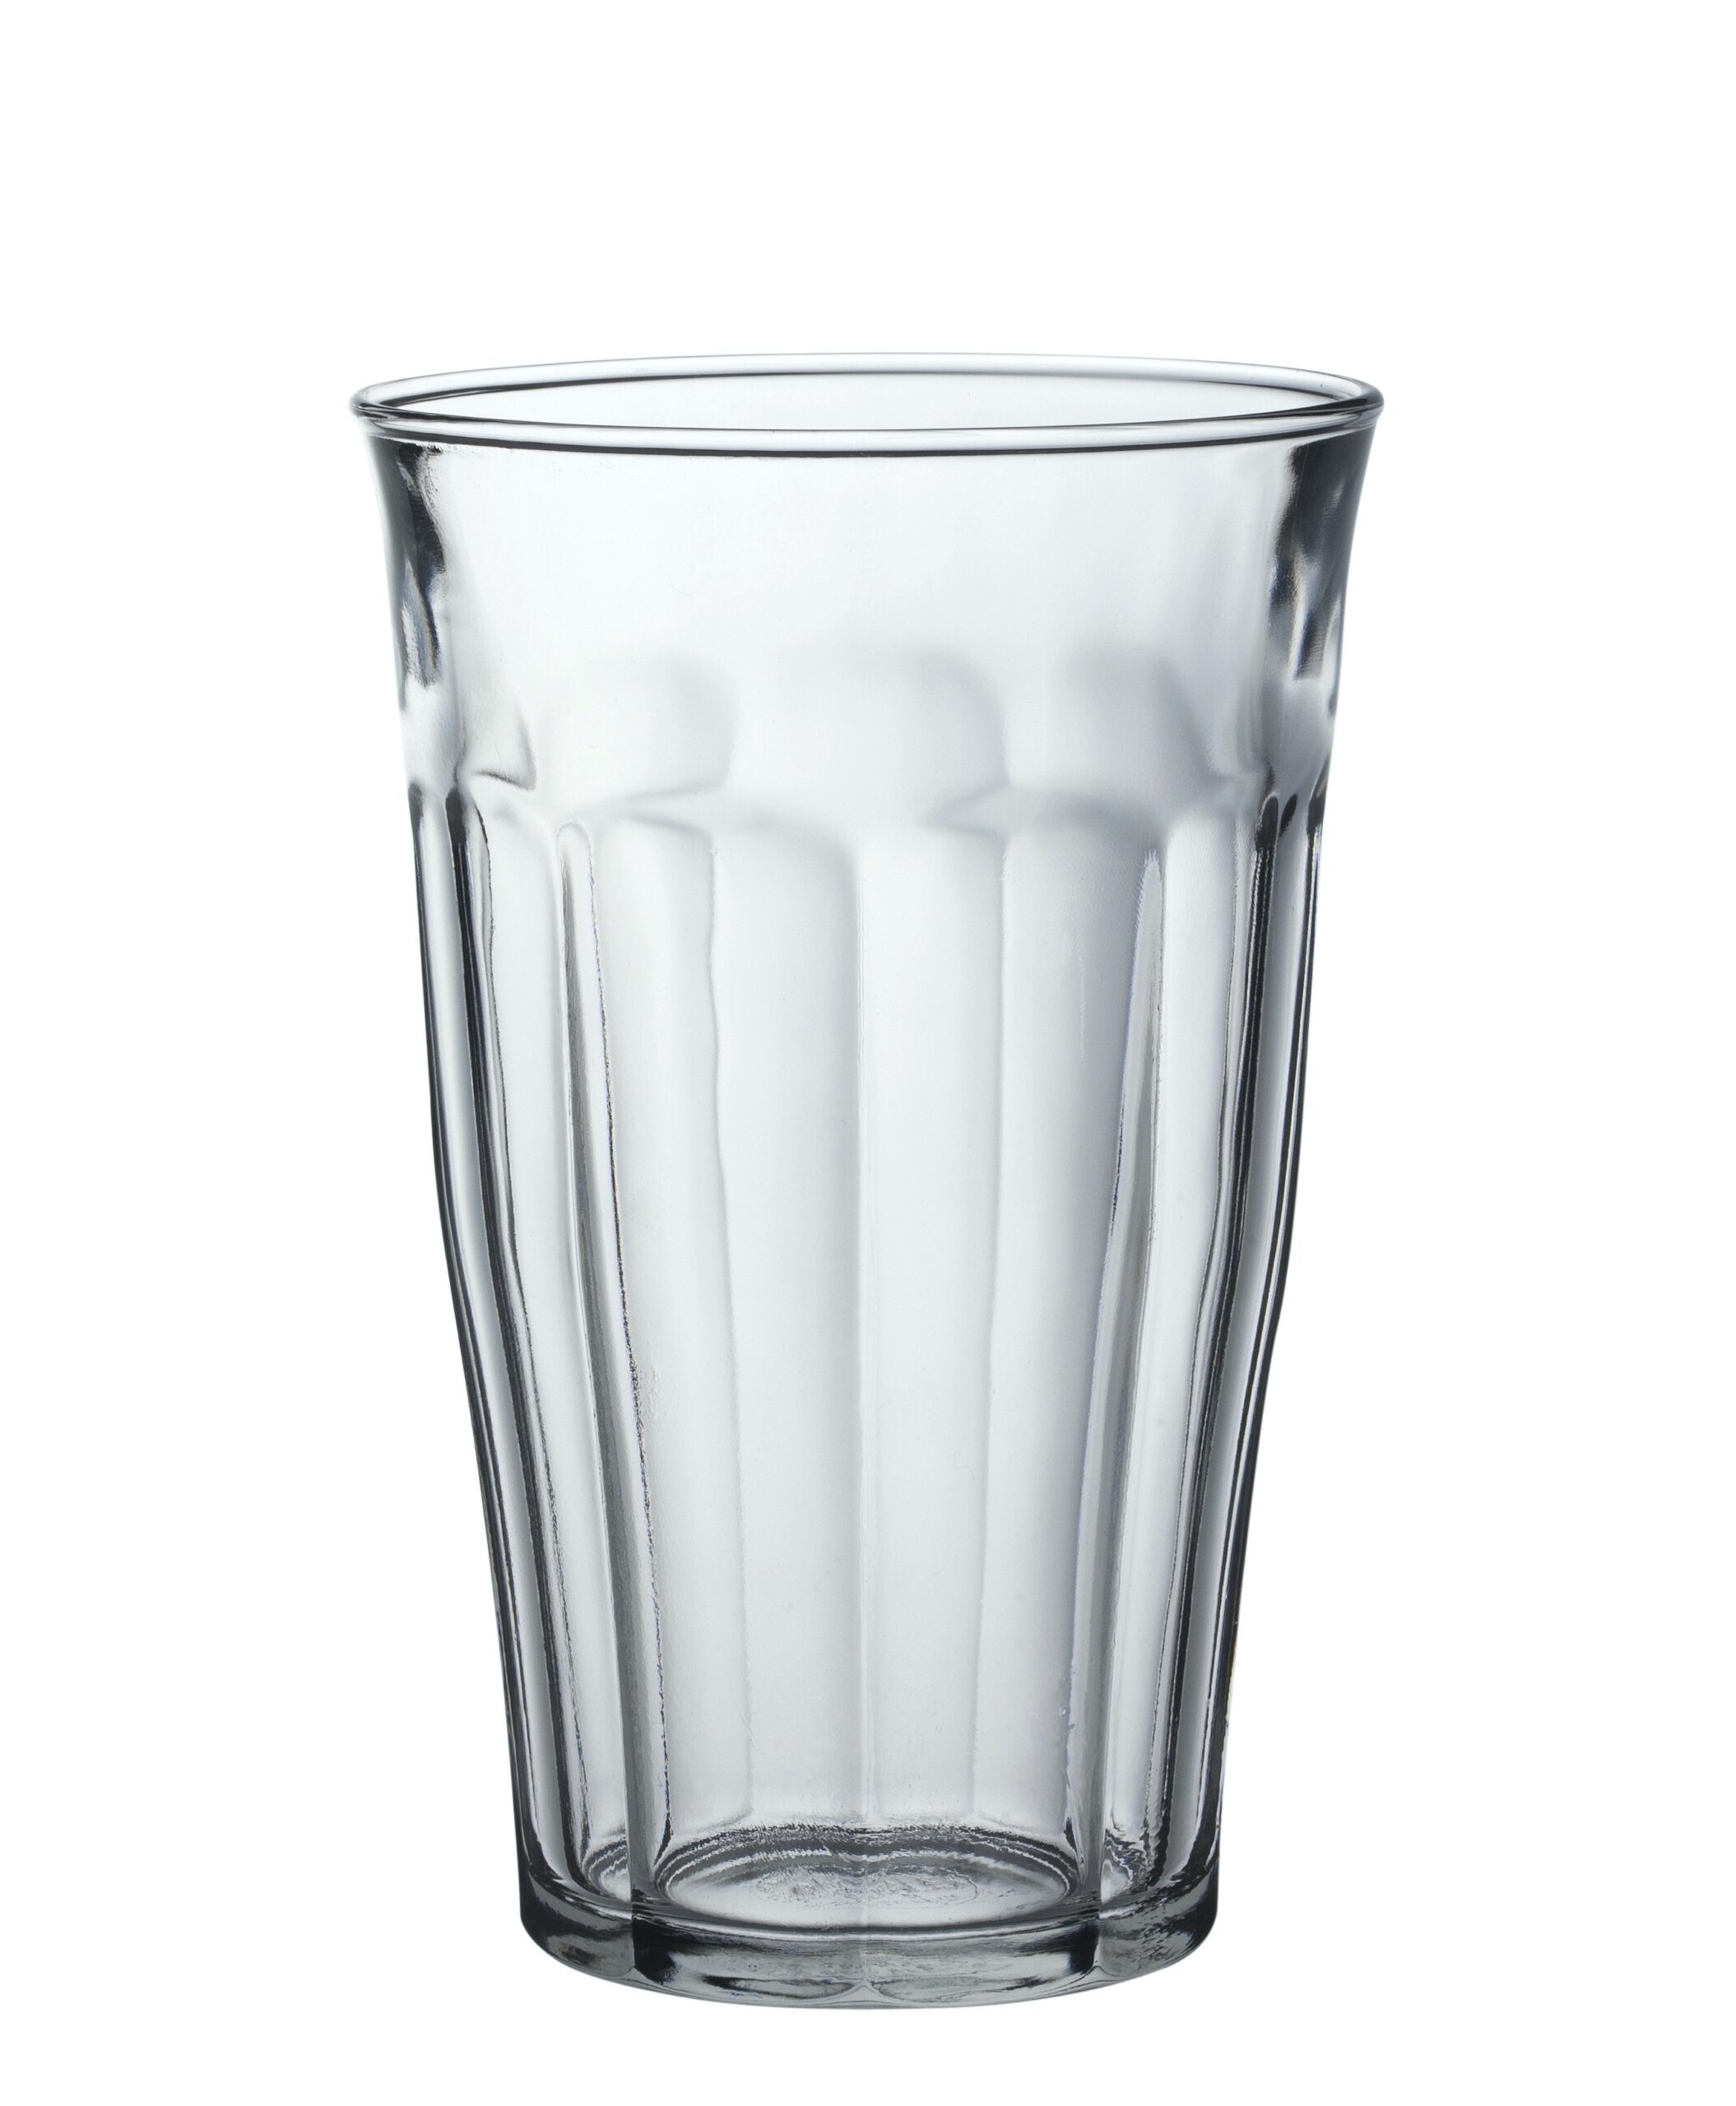 Duralex Picardie Tumbler, Trinkglas, 500ml, mit Füllstrich bei 0.4l, Glas gehärtet, transparent, 6 Stück